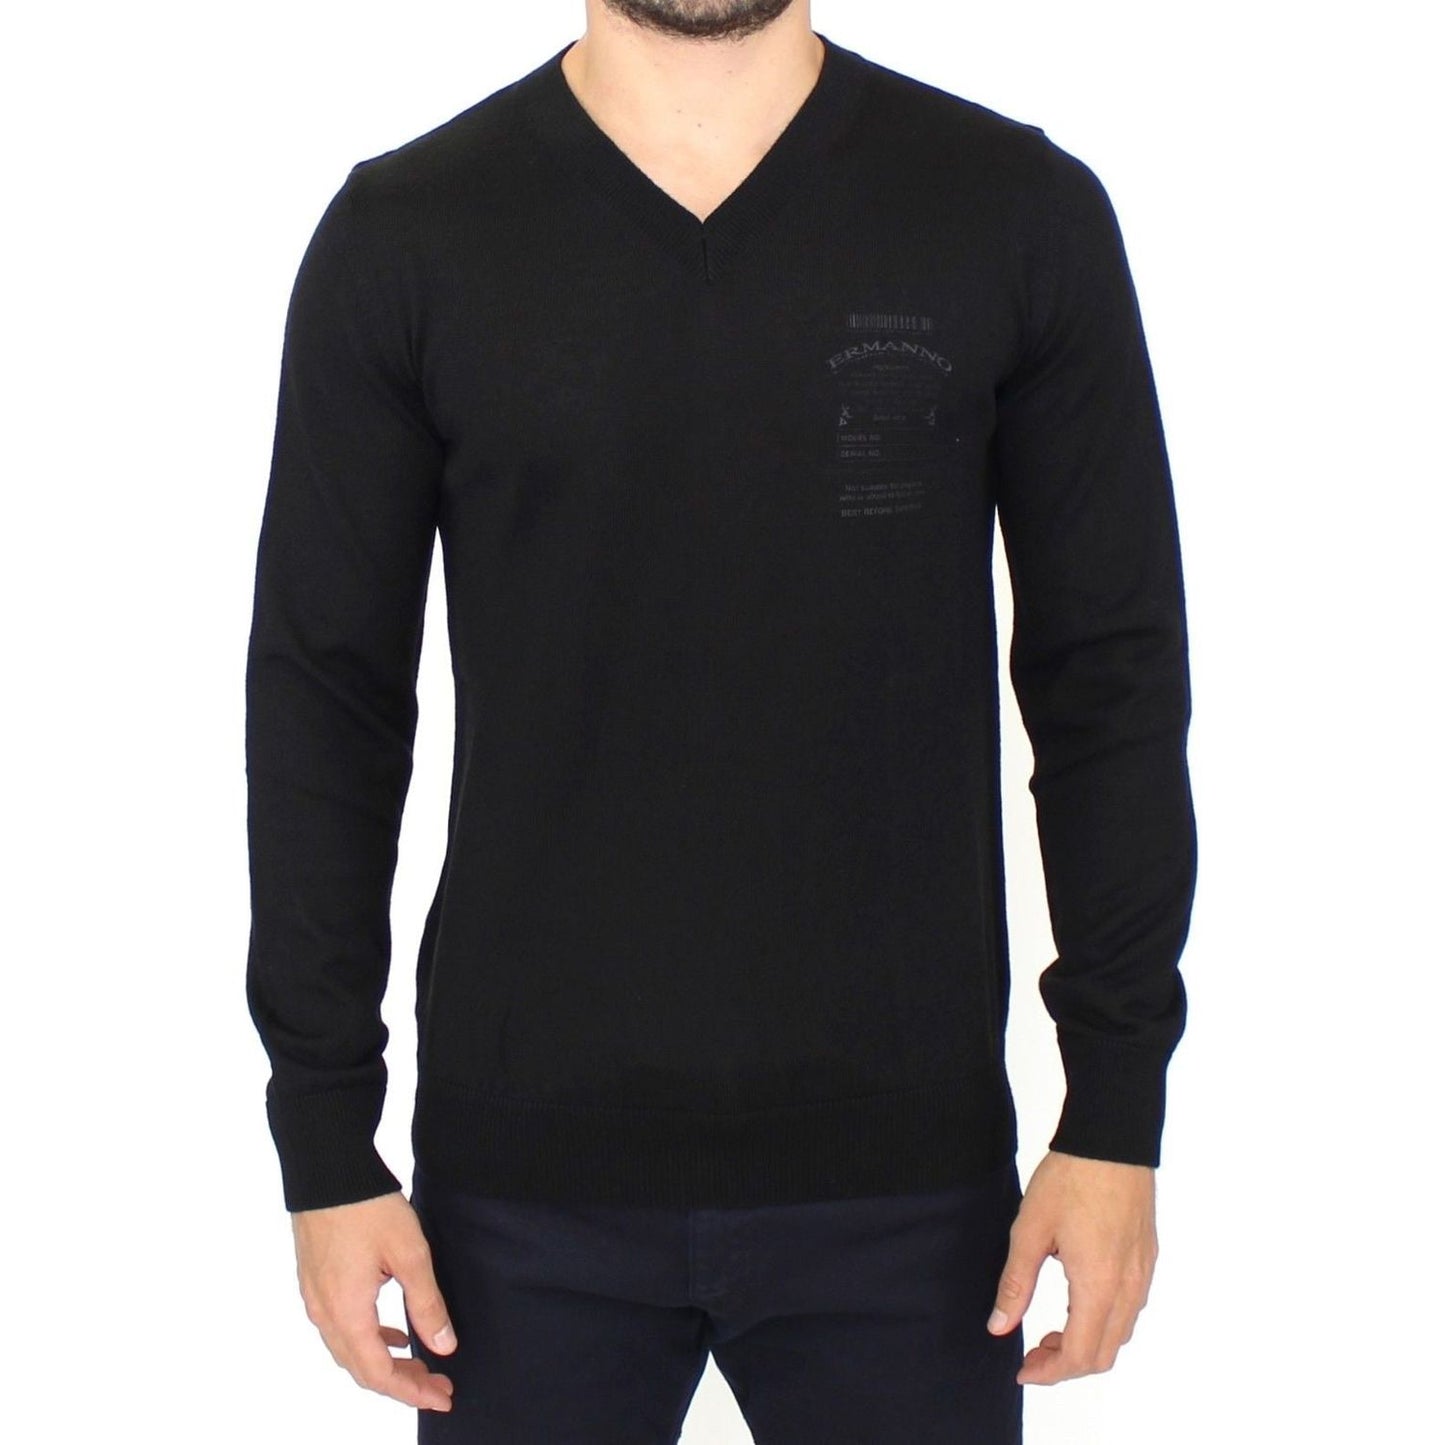 Ermanno Scervino Elegant Black V-Neck Wool Blend Sweater black-wool-blend-v-neck-pullover-sweater 37457-black-wool-blend-v-neck-pullover-sweater.jpg